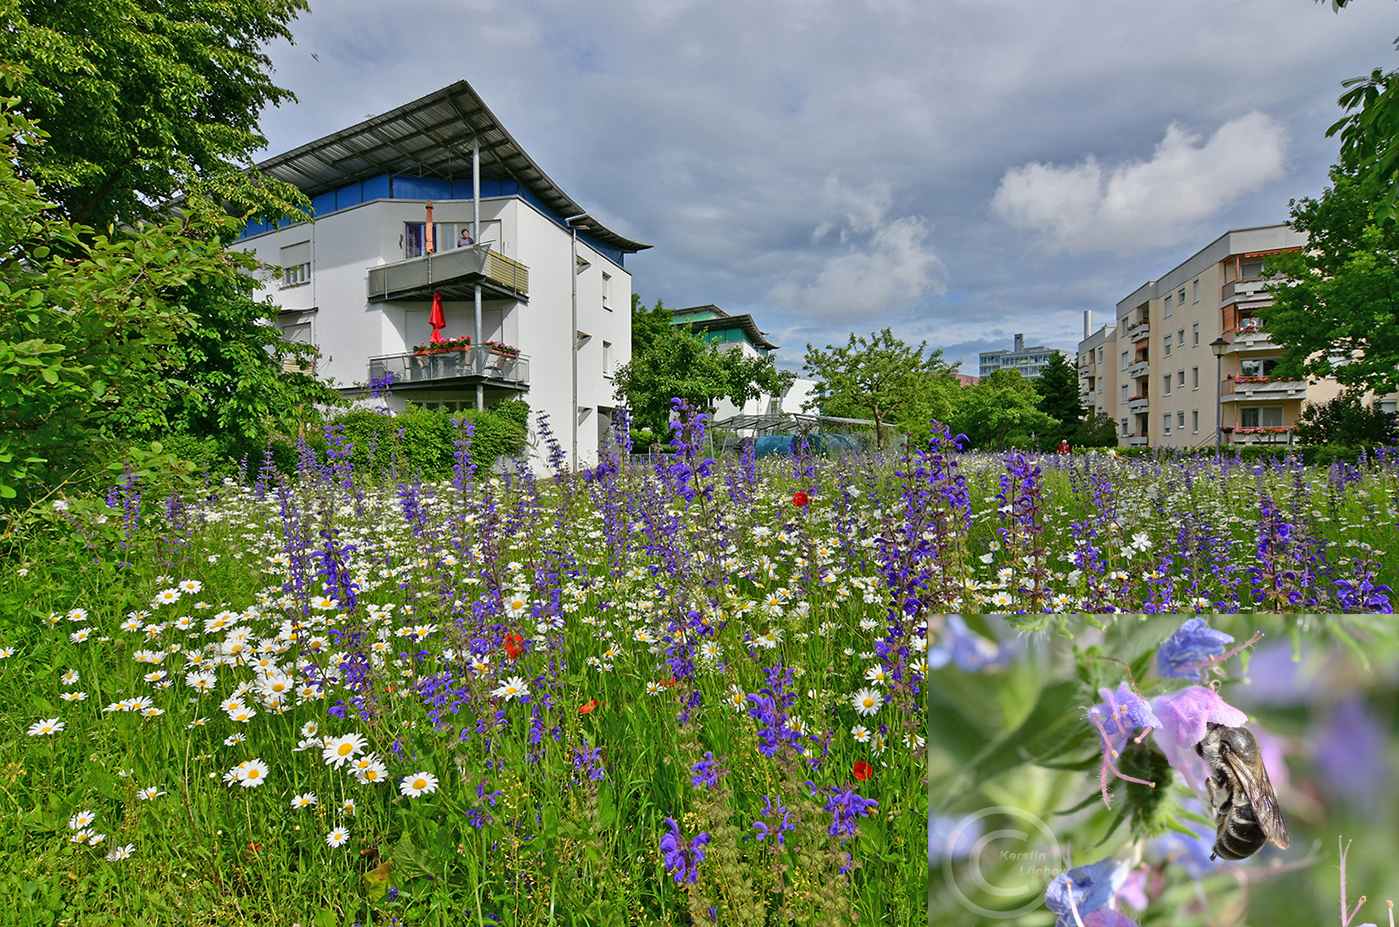 Magerrasen auf einem Tiefgaragendach. Das Wohnungsbauunternehmen GWG Ingolstadt sät Wildblumen für seine Mieter. Die Wiesen wurden 2016 und 2018 als UN-Dekade-Projekte ausgezeichnet (Foto: GWG Ingolstadt)